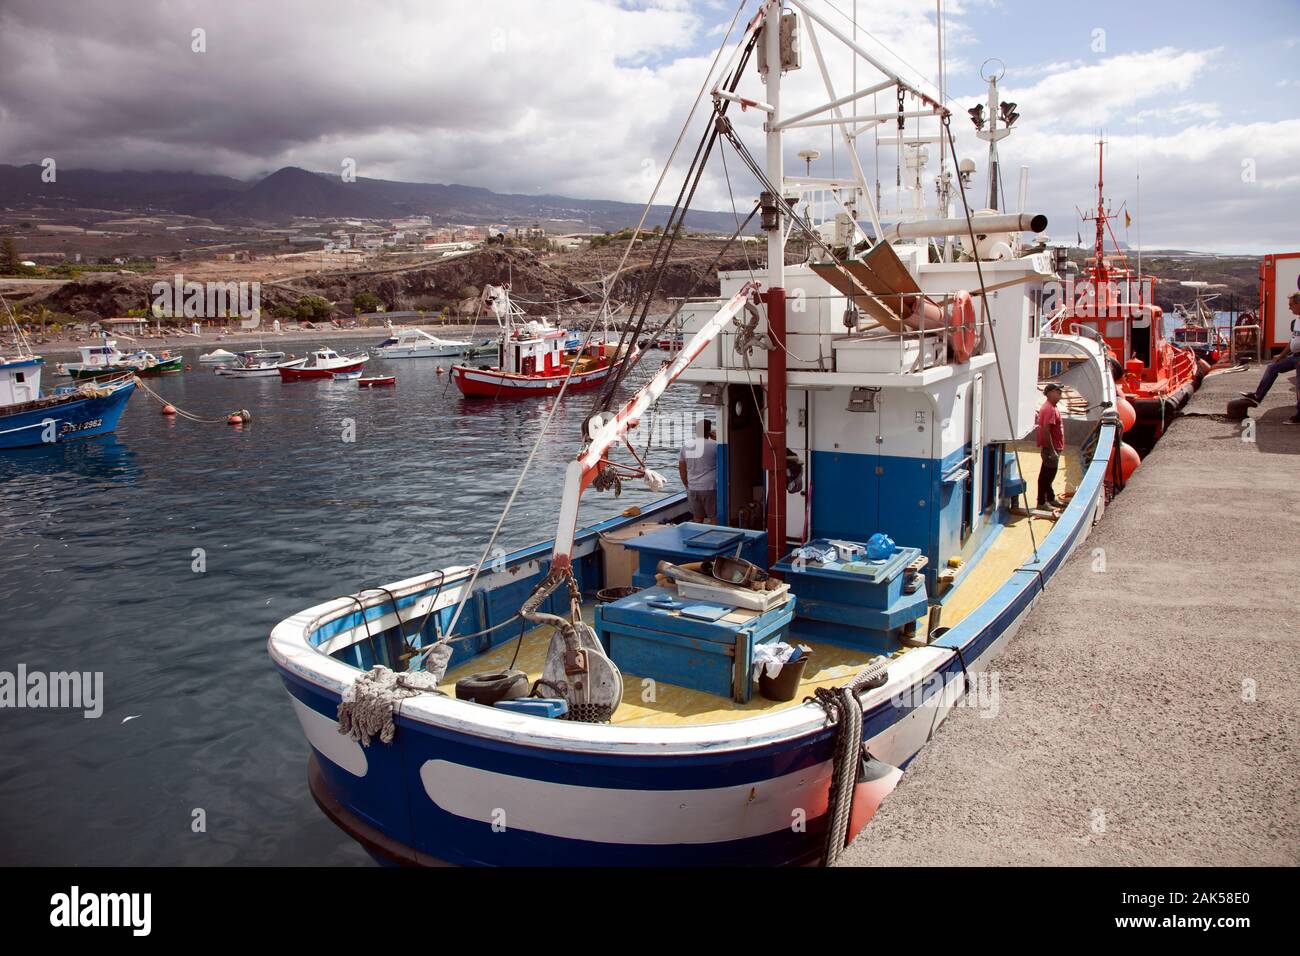 Los barcos de pesca en el puerto de San Juan, Santa Cruz de Tenerife, Islas Canarias Foto de stock